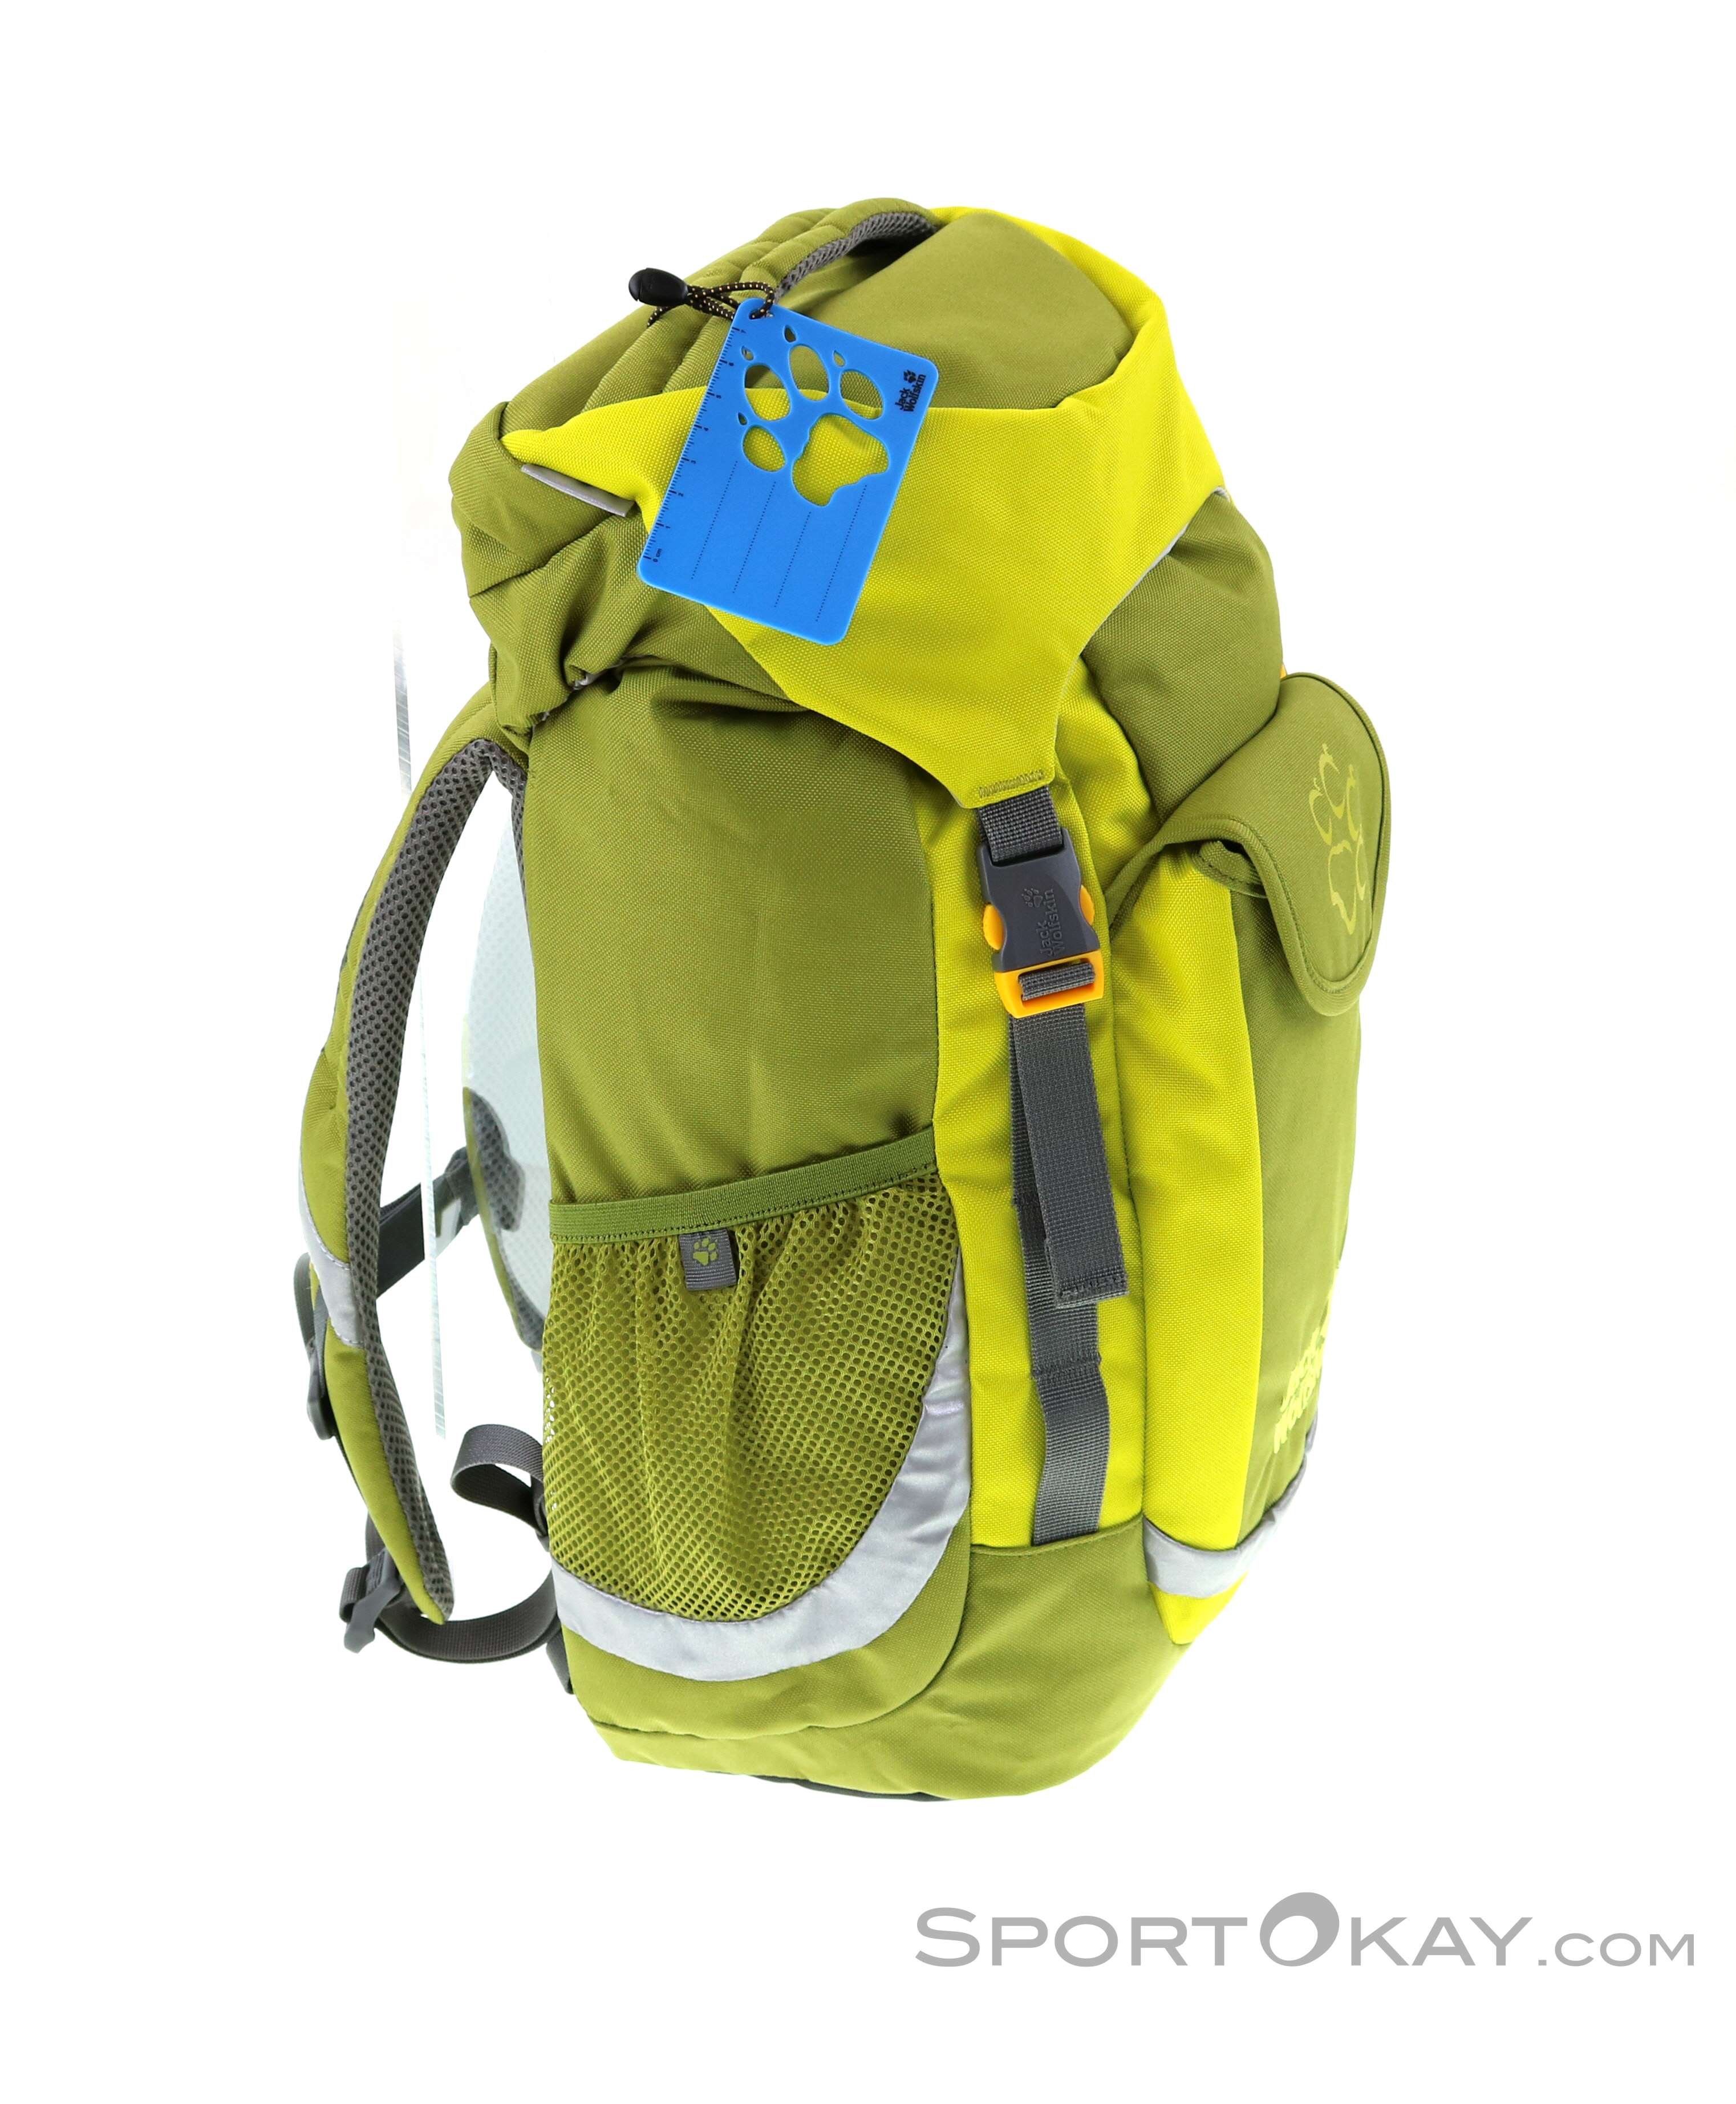 & All - Backpacks Explorer Kids - - Jack Backpack Wolfskin Kids Headlamps Outdoor 20l - Backpacks